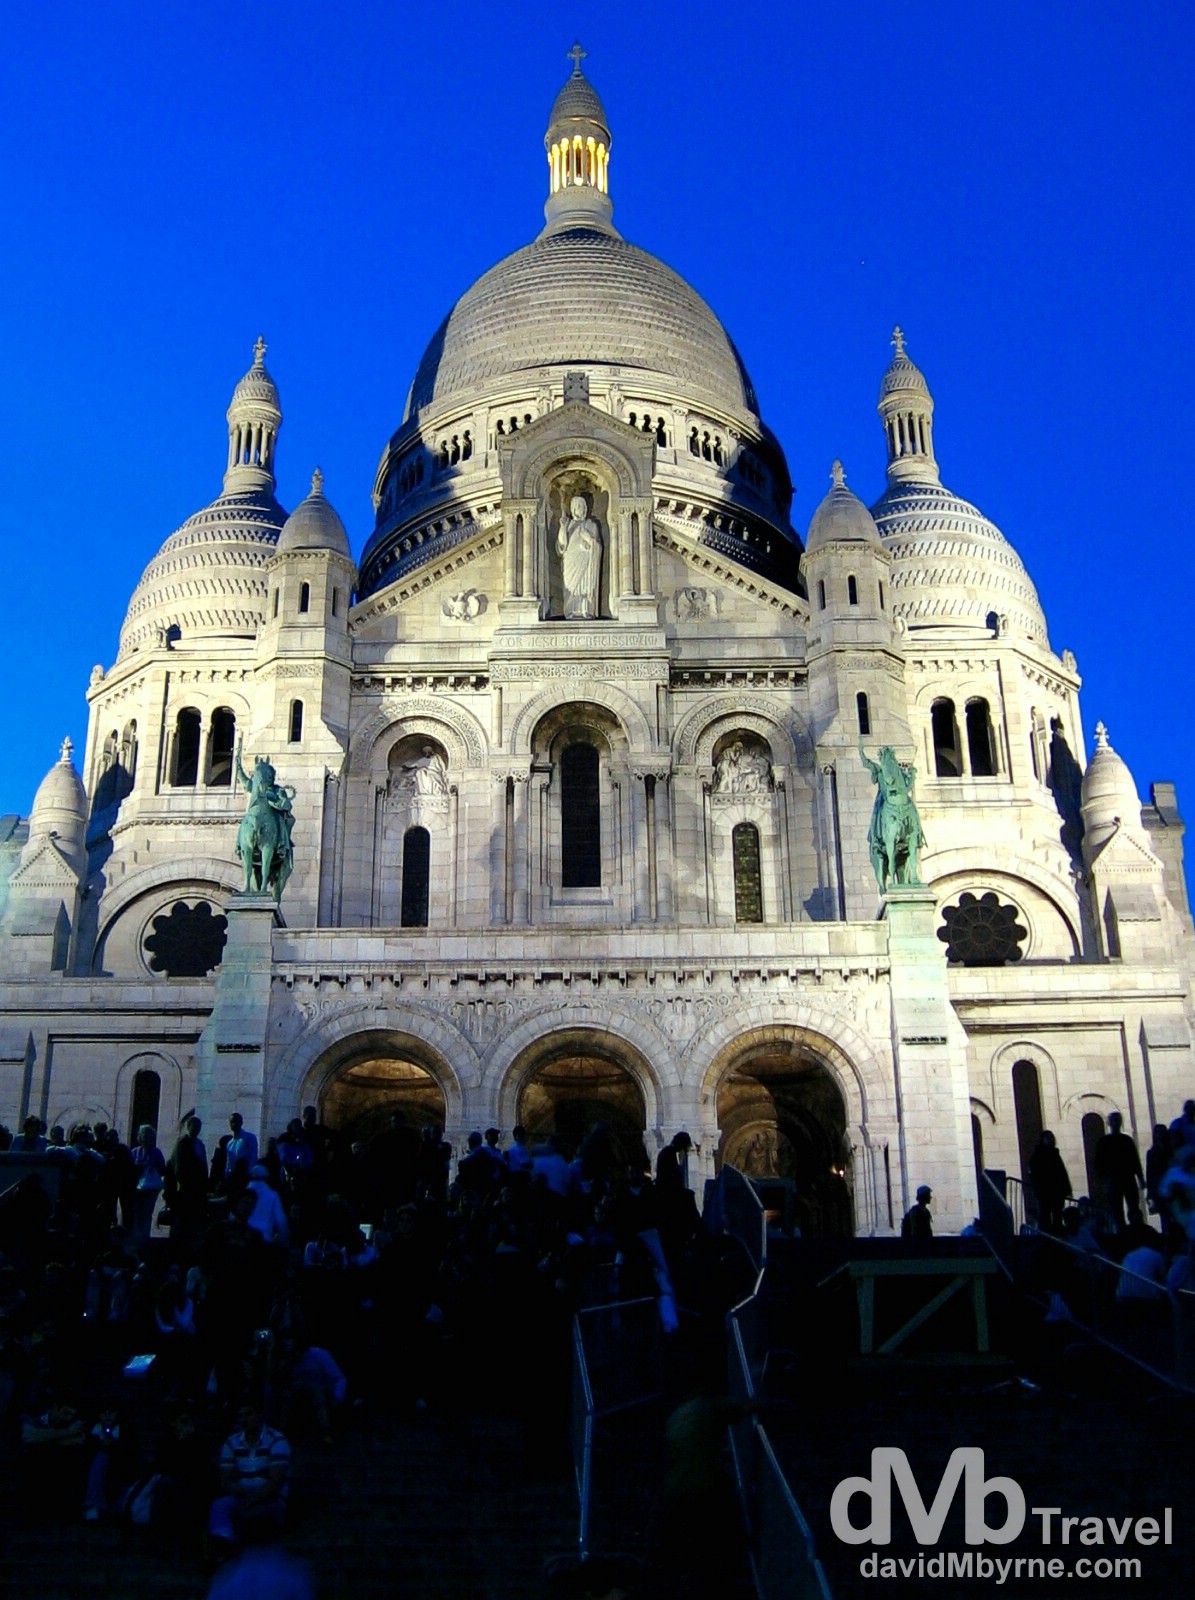 Basilique du Sacre Coeur, Montmartre, Paris, France. August 17th, 2007. 